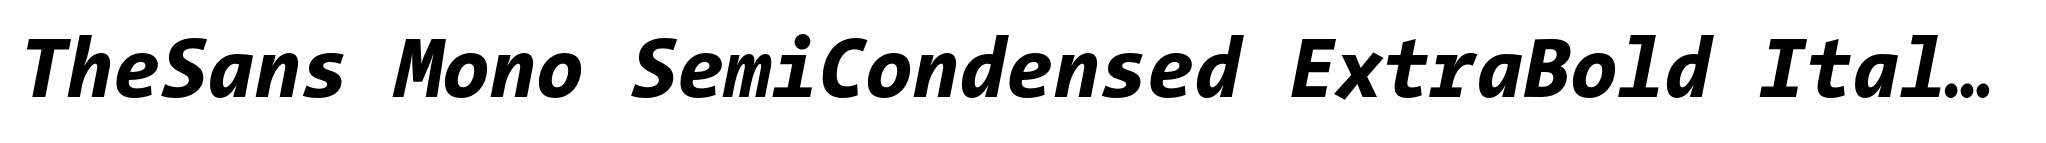 TheSans Mono SemiCondensed ExtraBold Italic image